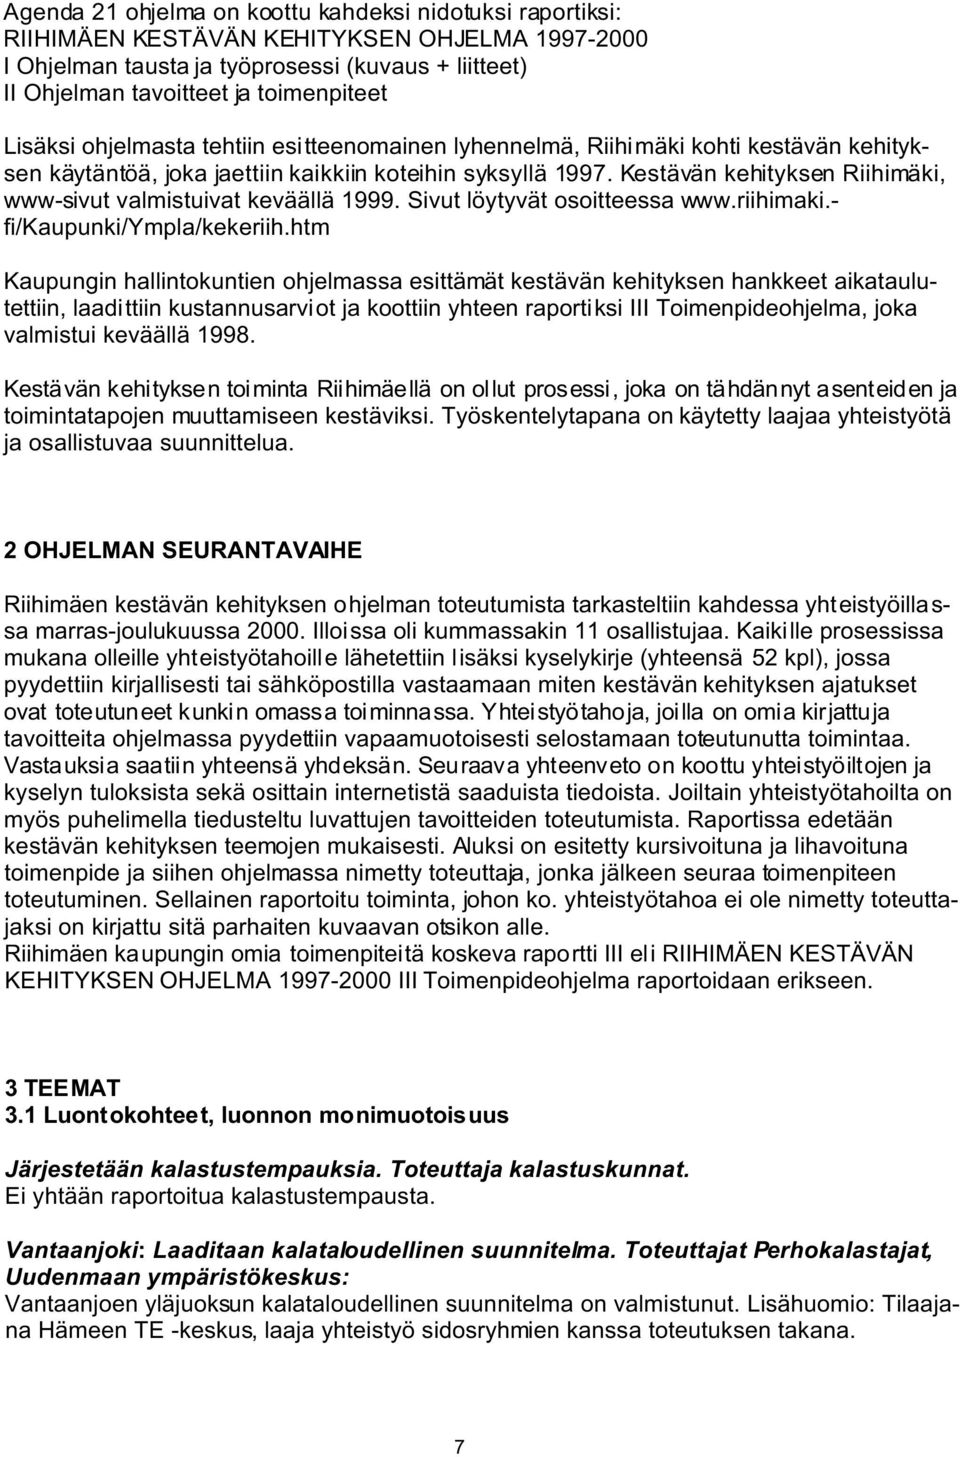 Kestävän kehityksen Riihimäki, www-sivut valmistuivat keväällä 1999. Sivut löytyvät osoitteessa www.riihimaki.- fi/kaupunki/ympla/kekeriih.